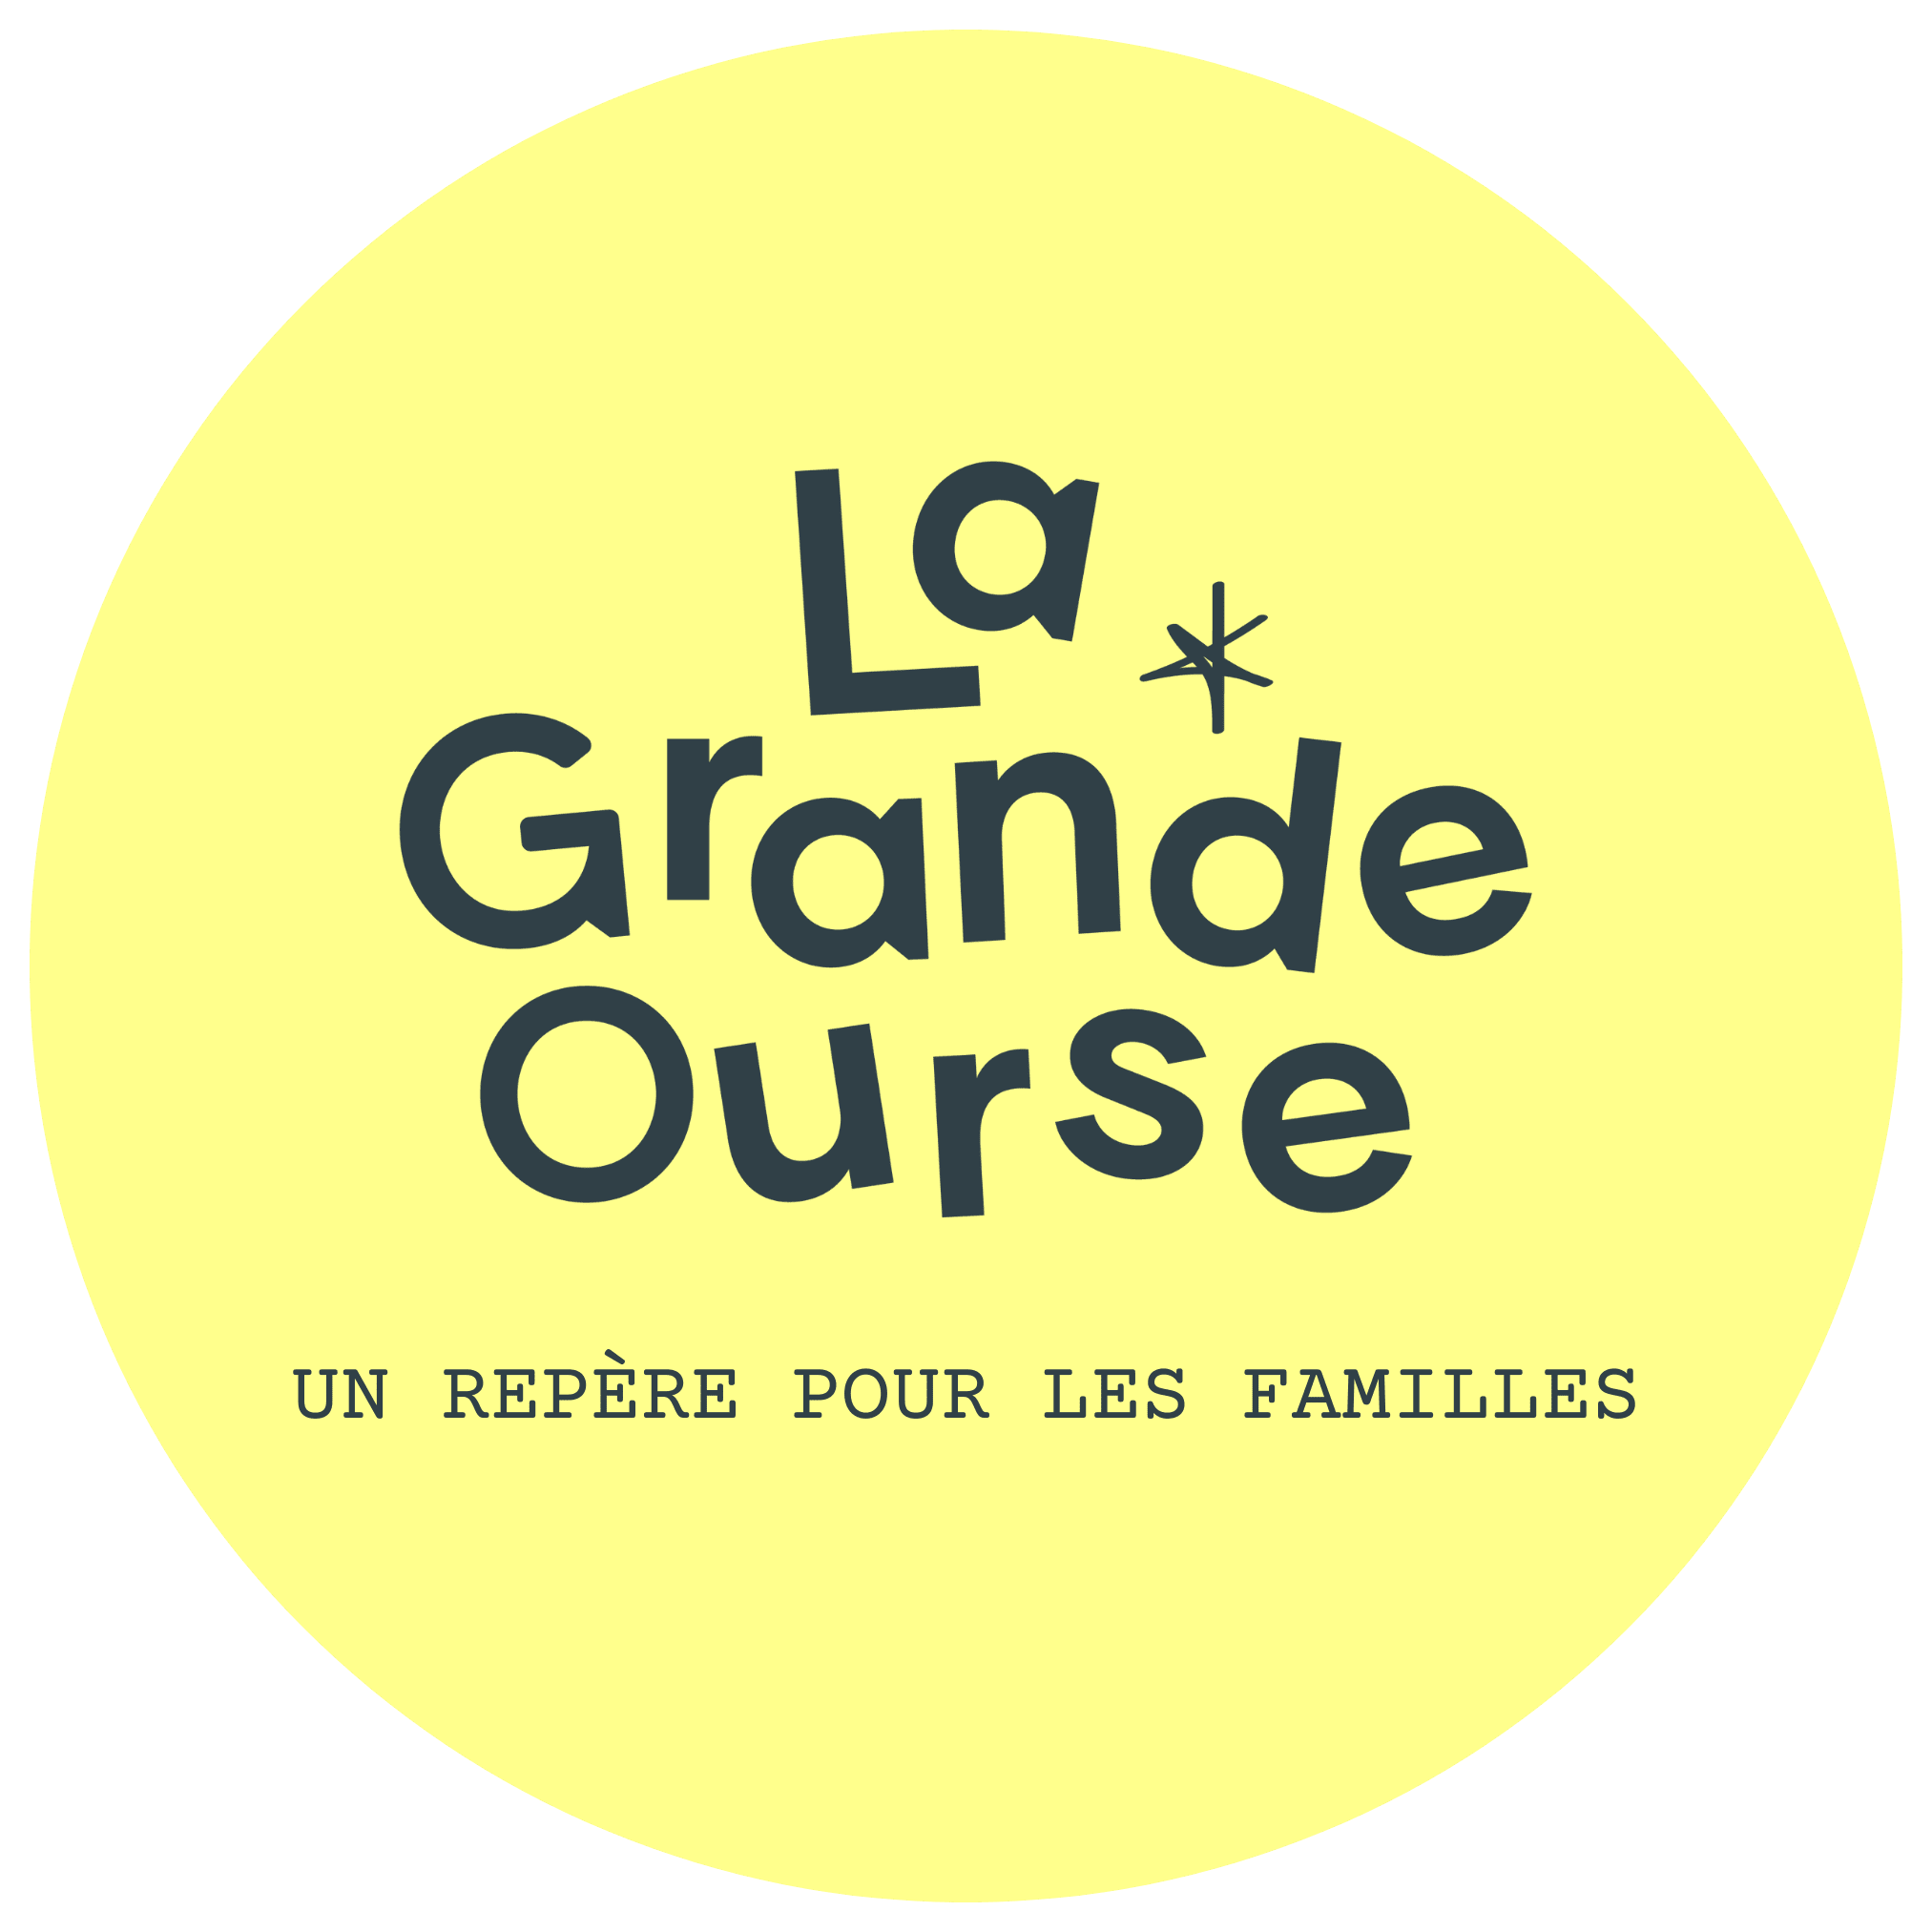 La grande ourse; ateliers parents enfants Libourne; café associatif Libourne